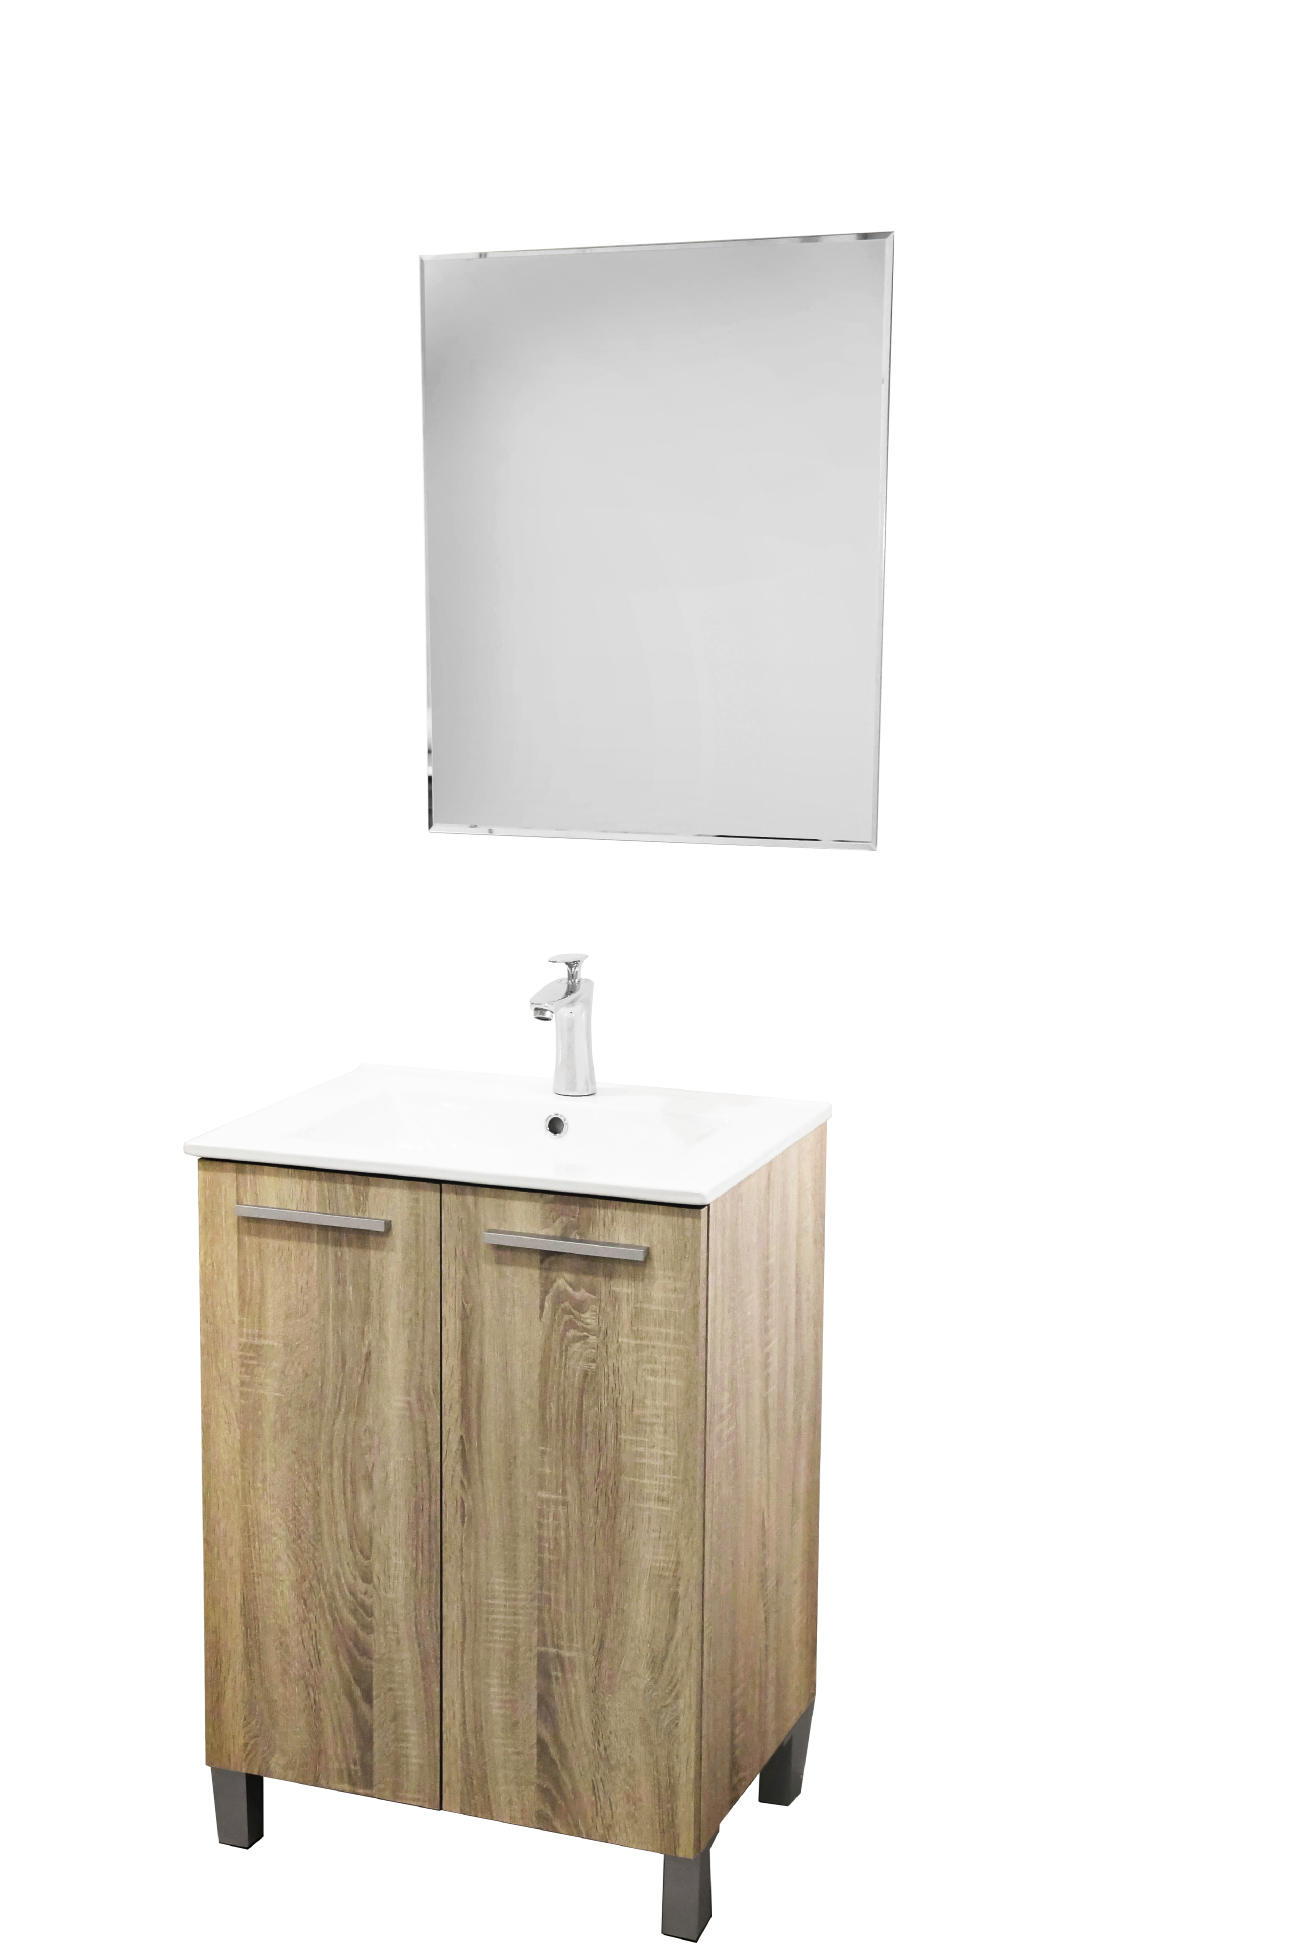 Set Mueble para baño a piso (Gabinete) MA60CA con dos puertas y entrepaño.  El set incluye:  lavabo de cerámica, espejo y monomando. Color Cambrian.